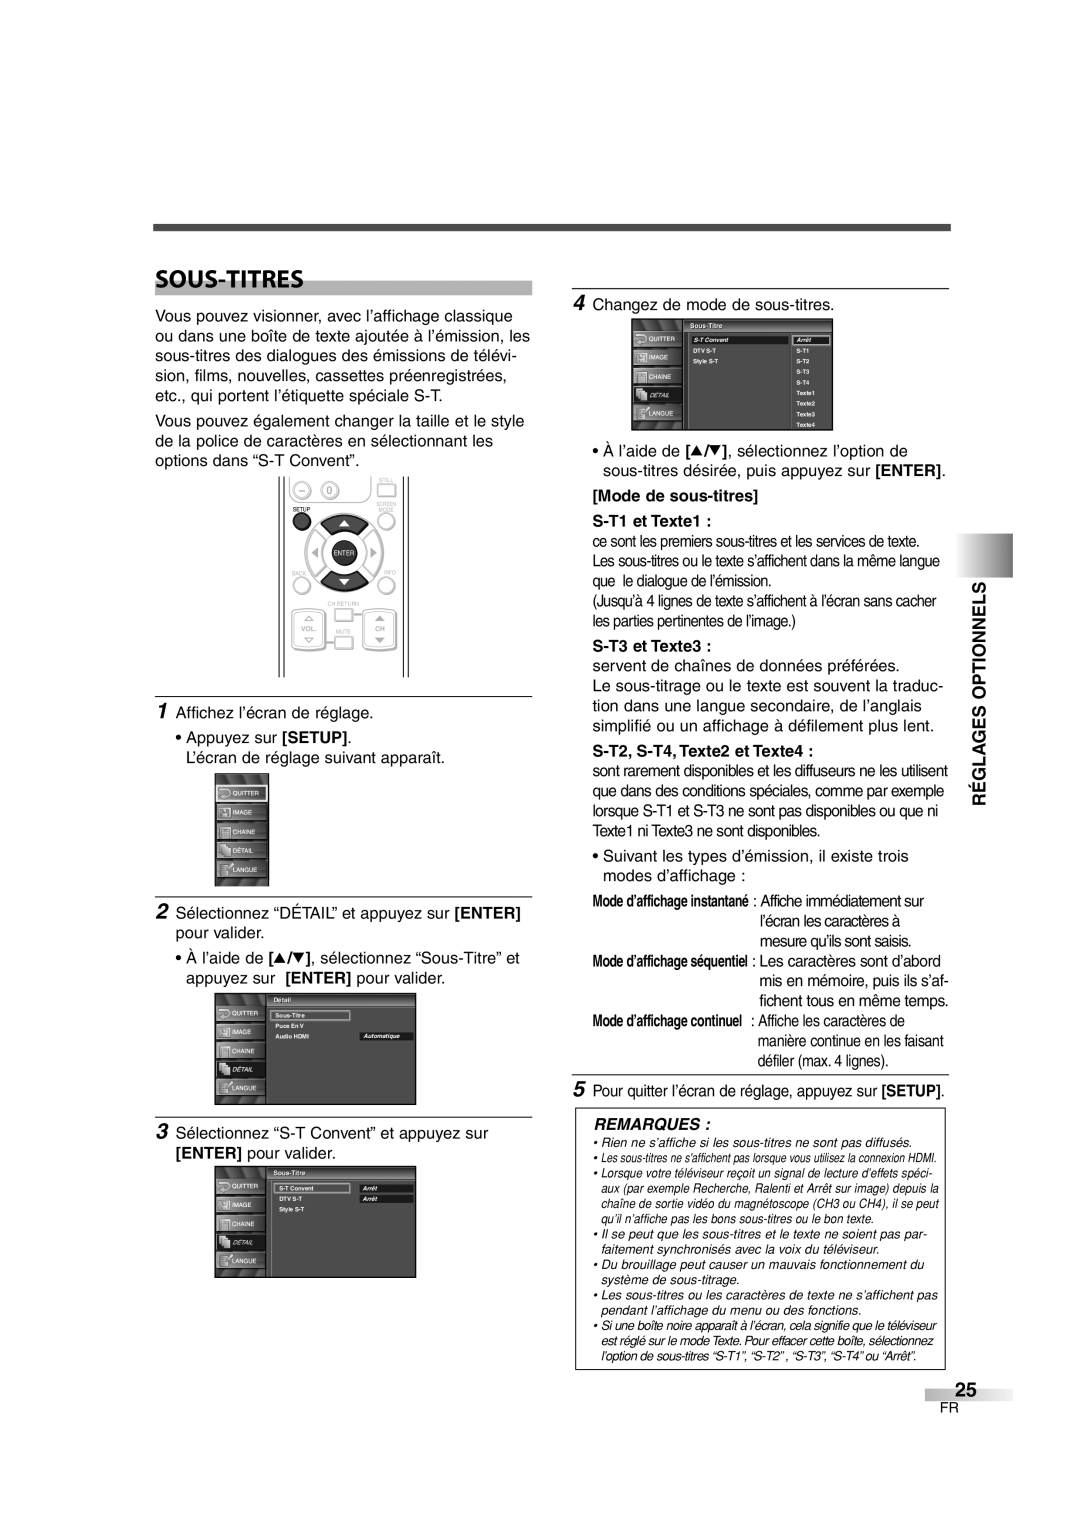 FUNAI CIWL3206 Sous-Titres, Mode de sous-titres S-T1 et Texte1, S-T3 et Texte3, S-T2, S-T4, Texte2 et Texte4, Remarques 